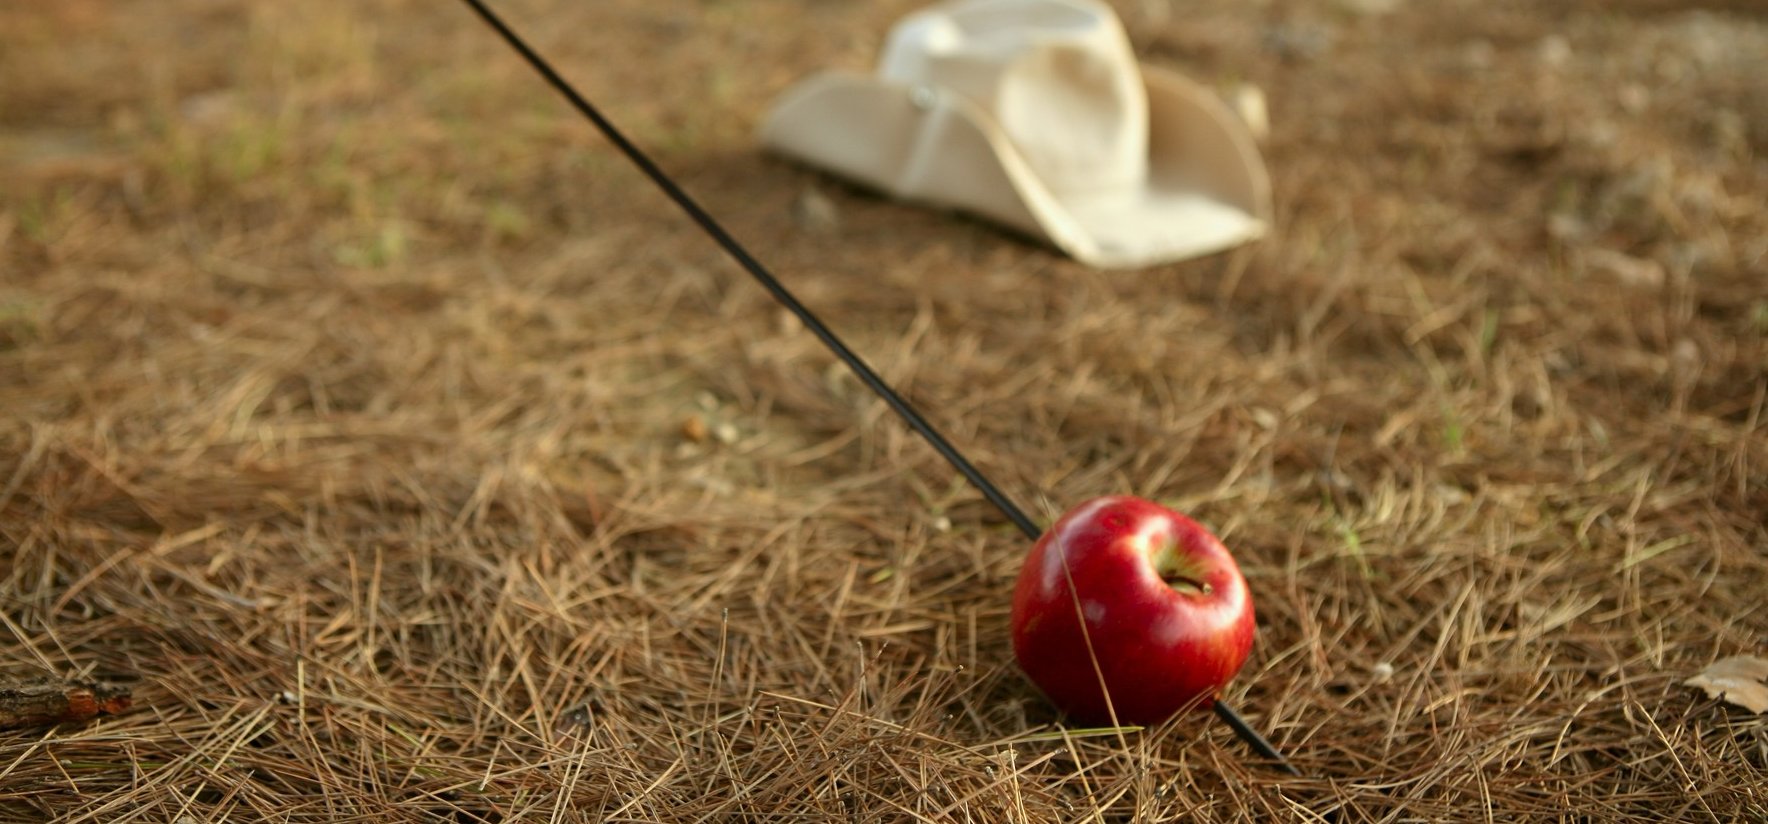 Állítólag Tell Vilmos 714 éve a mai napon lőtte le az almát a fia fejéről - galéria